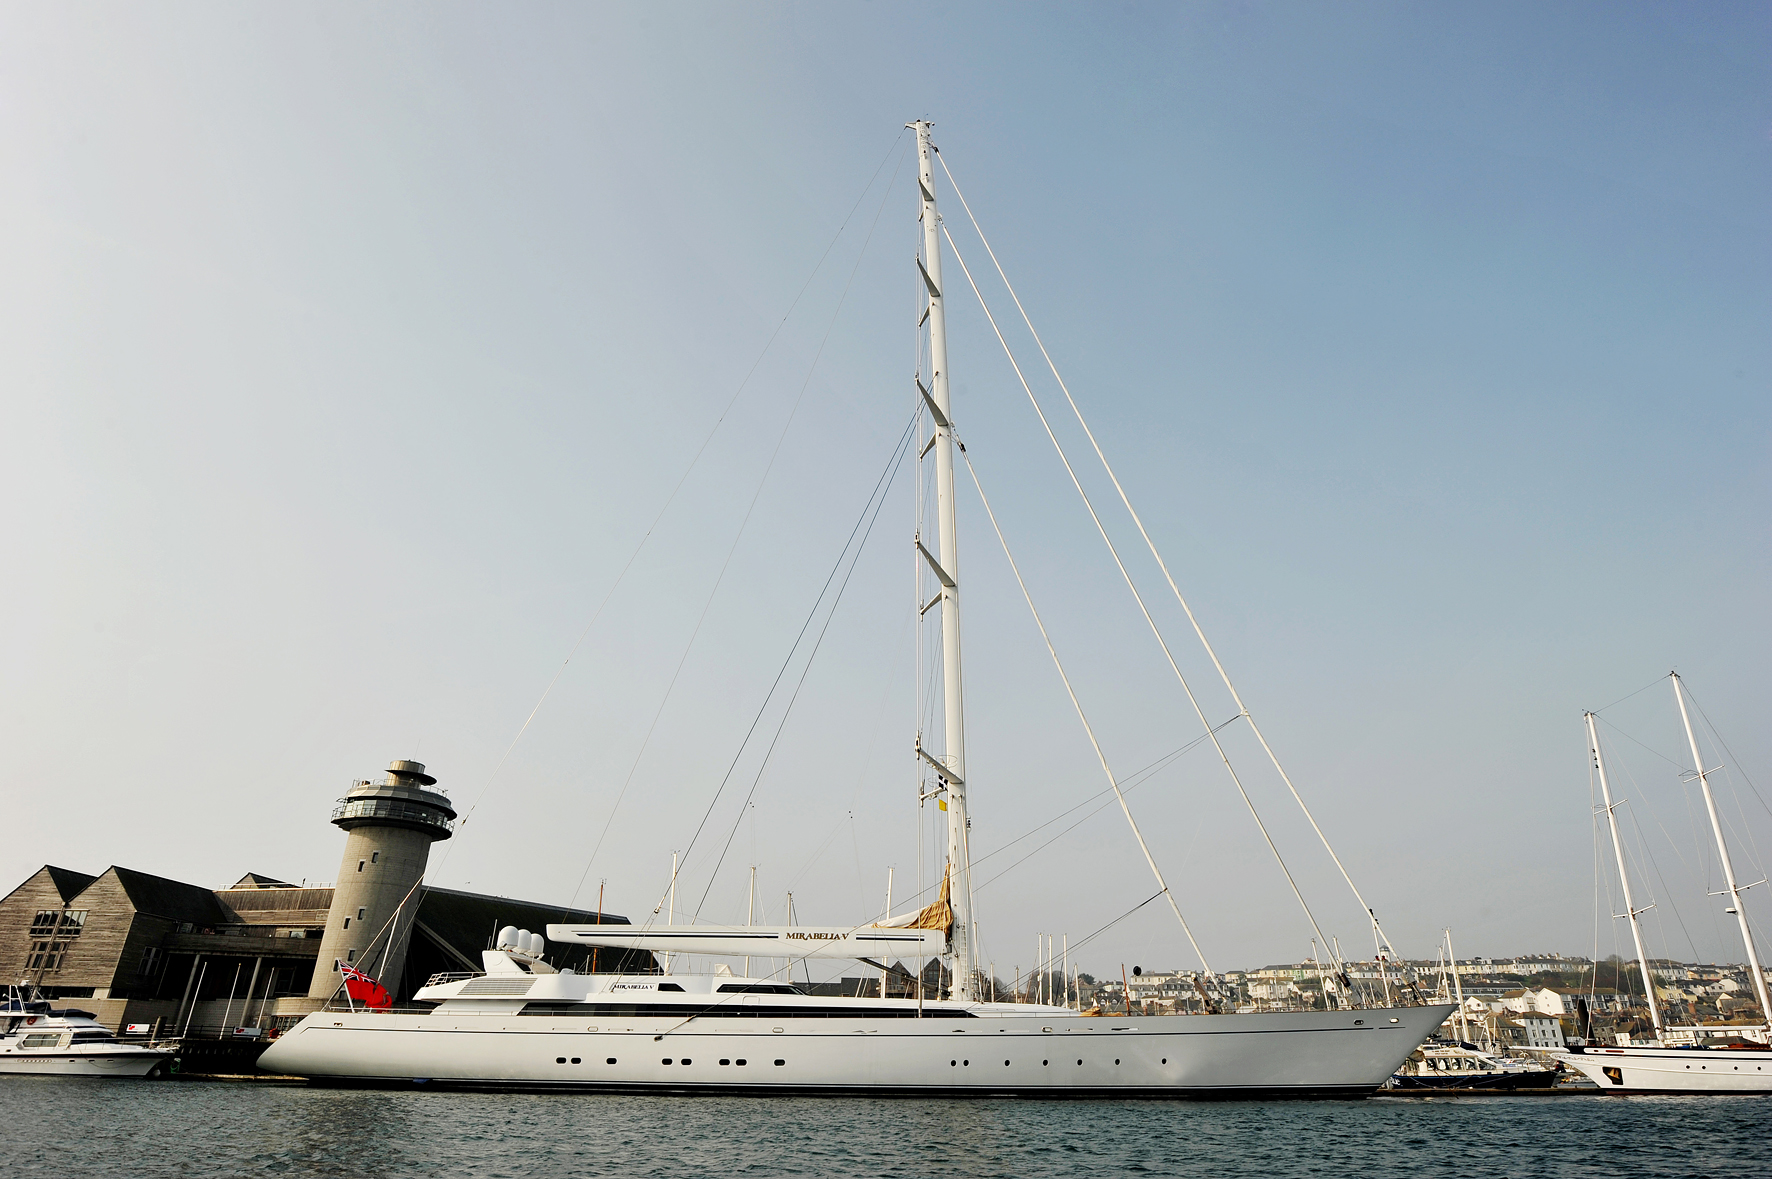 mirabella v yacht